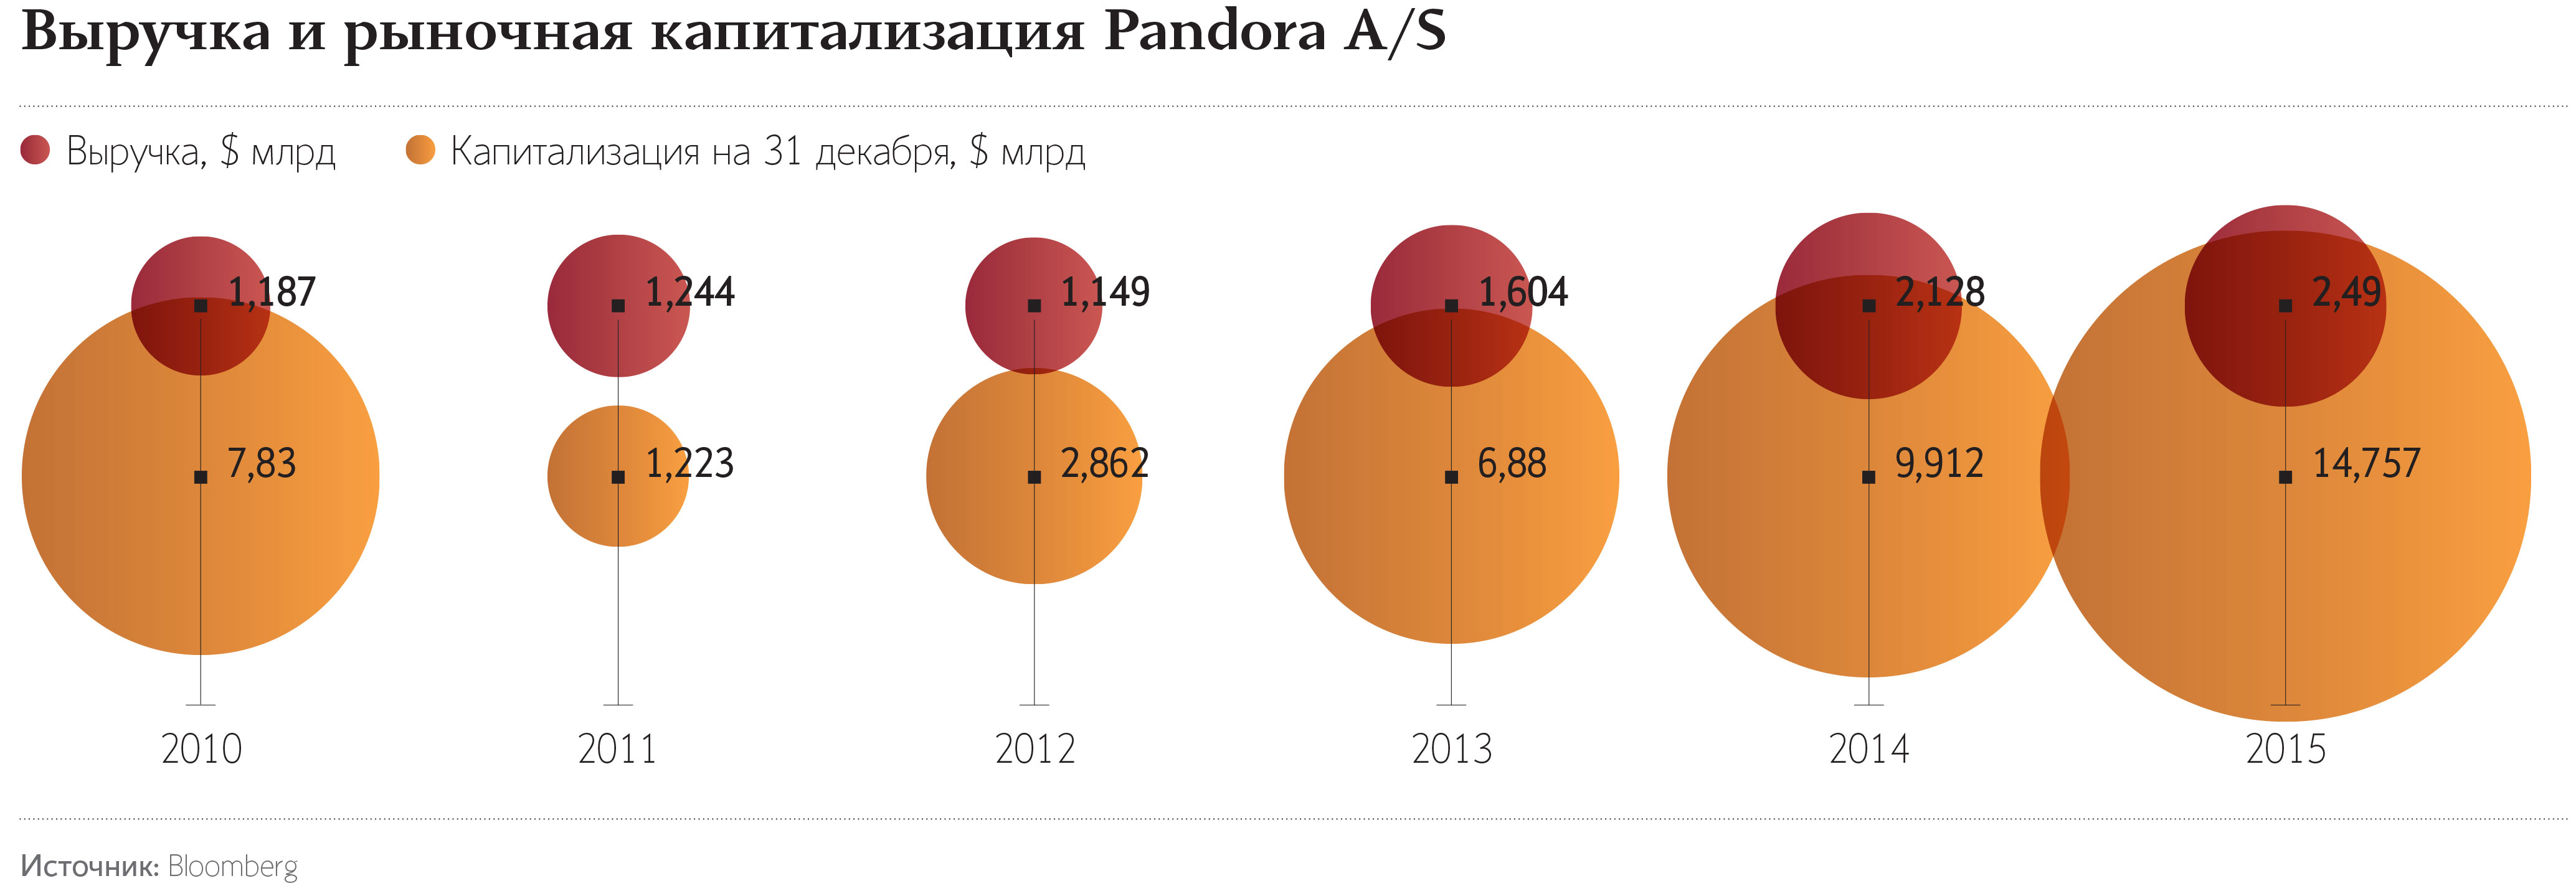 От взлета к кризису: как бренд Pandora пережил смену собственника